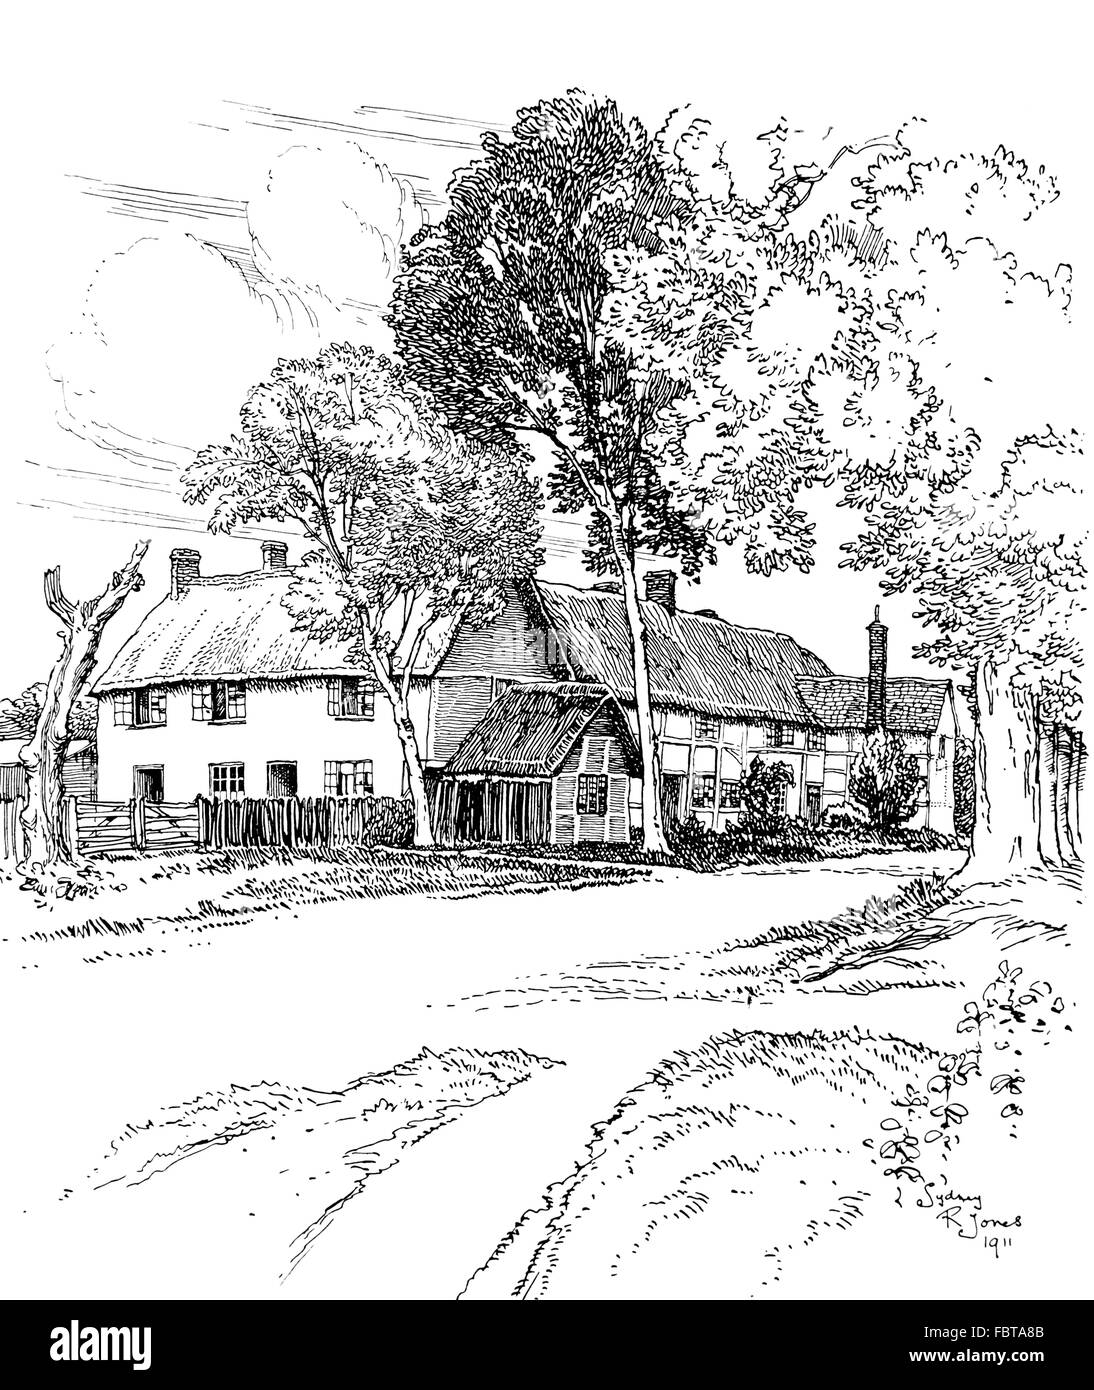 Großbritannien, England, Oxfordshire, Steventon, Dorfhäuser, strohgedeckten, neben Straße im Jahre 1911, Linie Illustration von Sydney R Jones Stockfoto